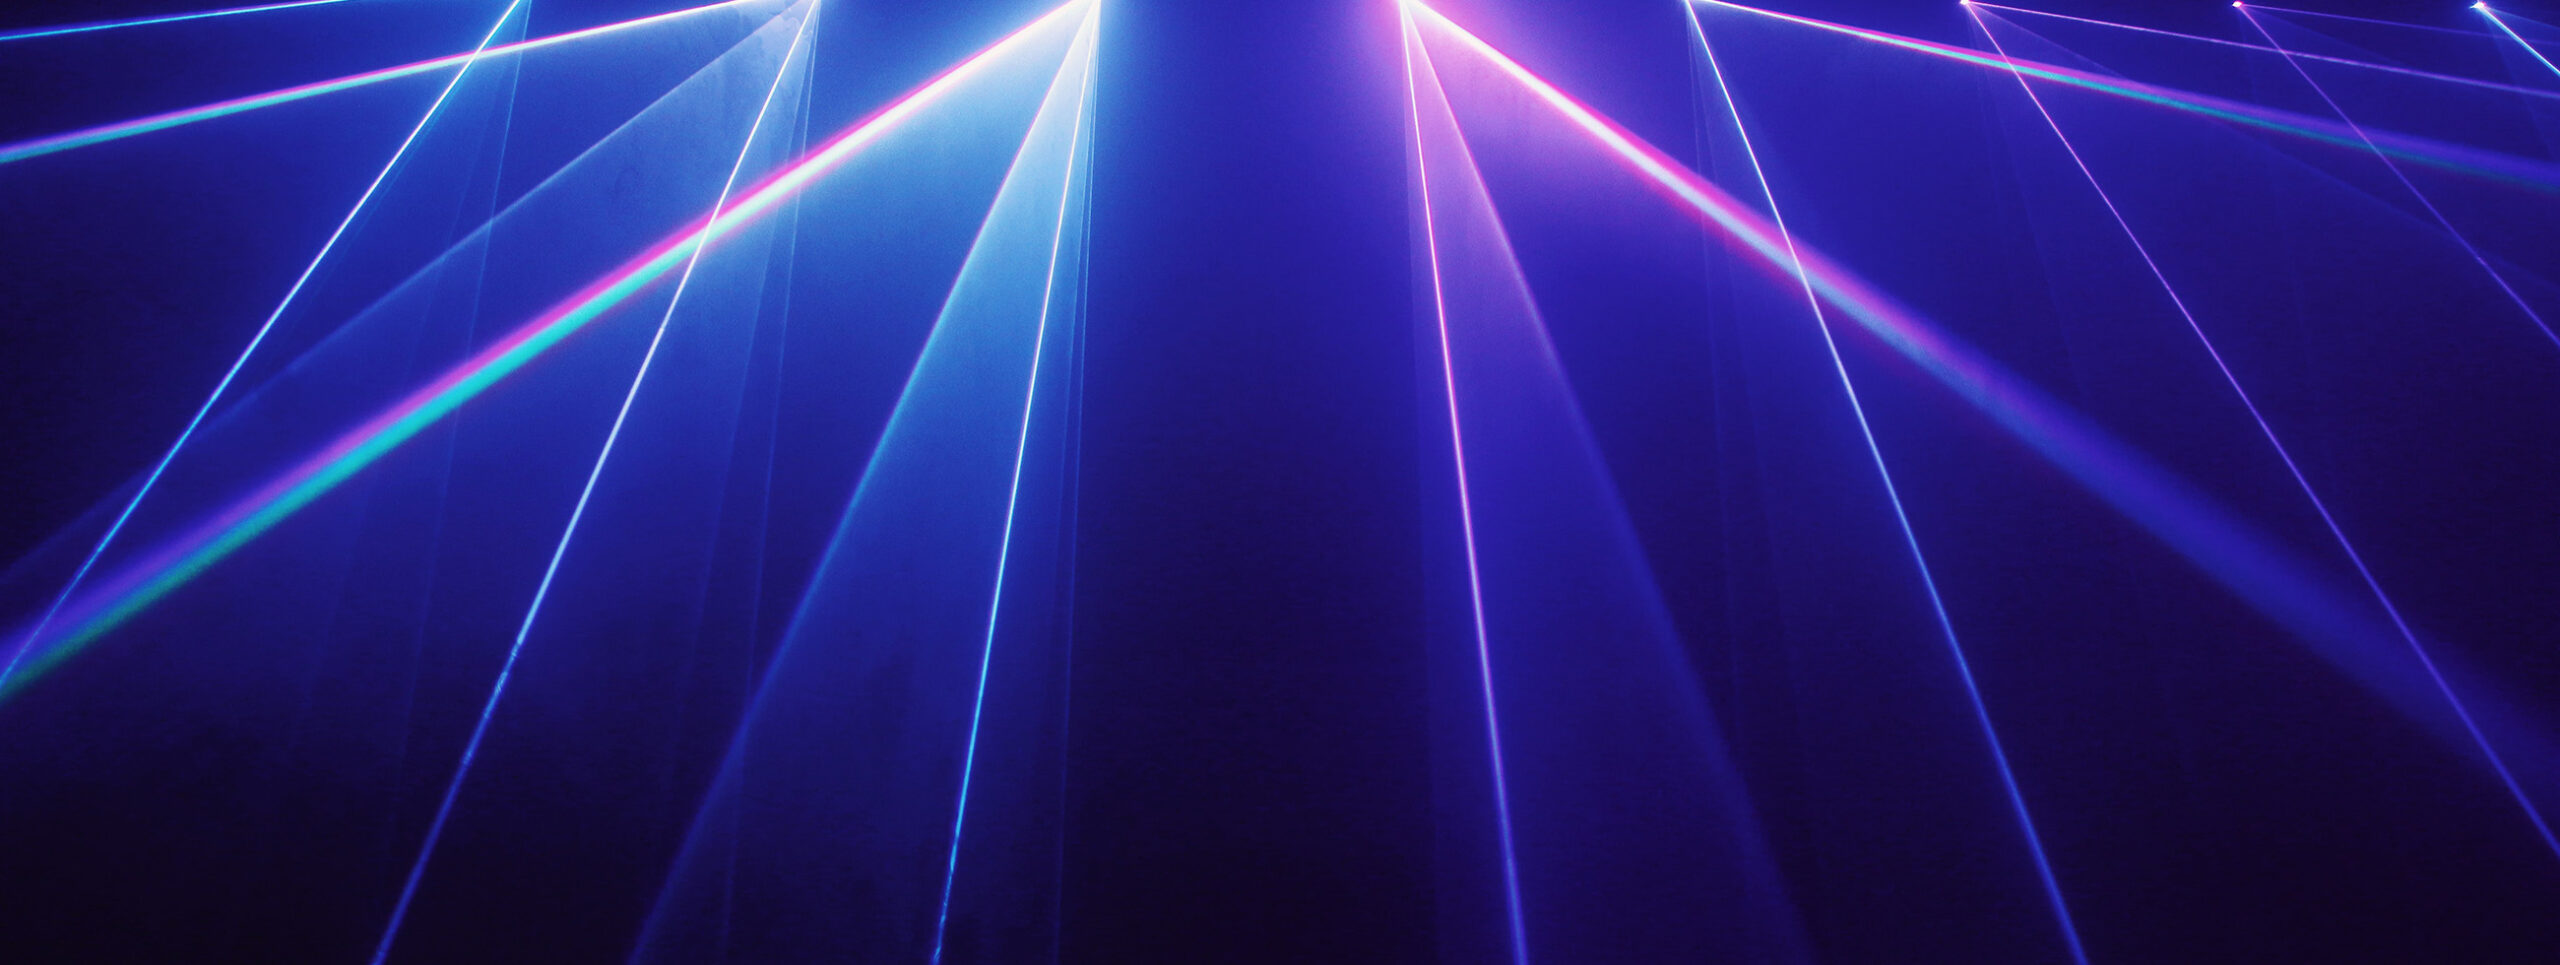 Laser lights against a blue background